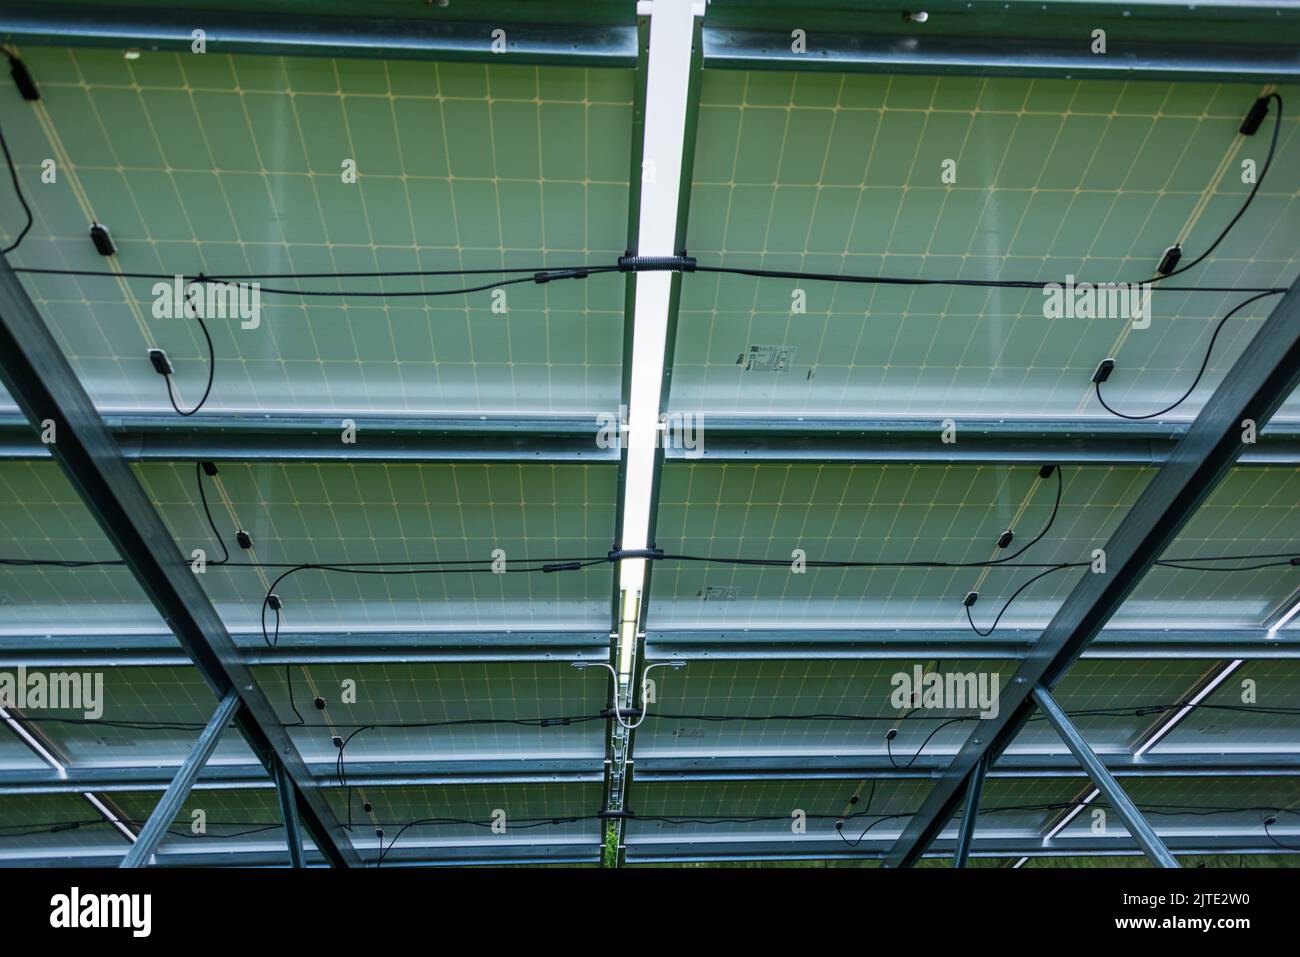 Rückseite einer Fotovoltaikanlage mit Verteiler und Elektrokabeln Foto de stock